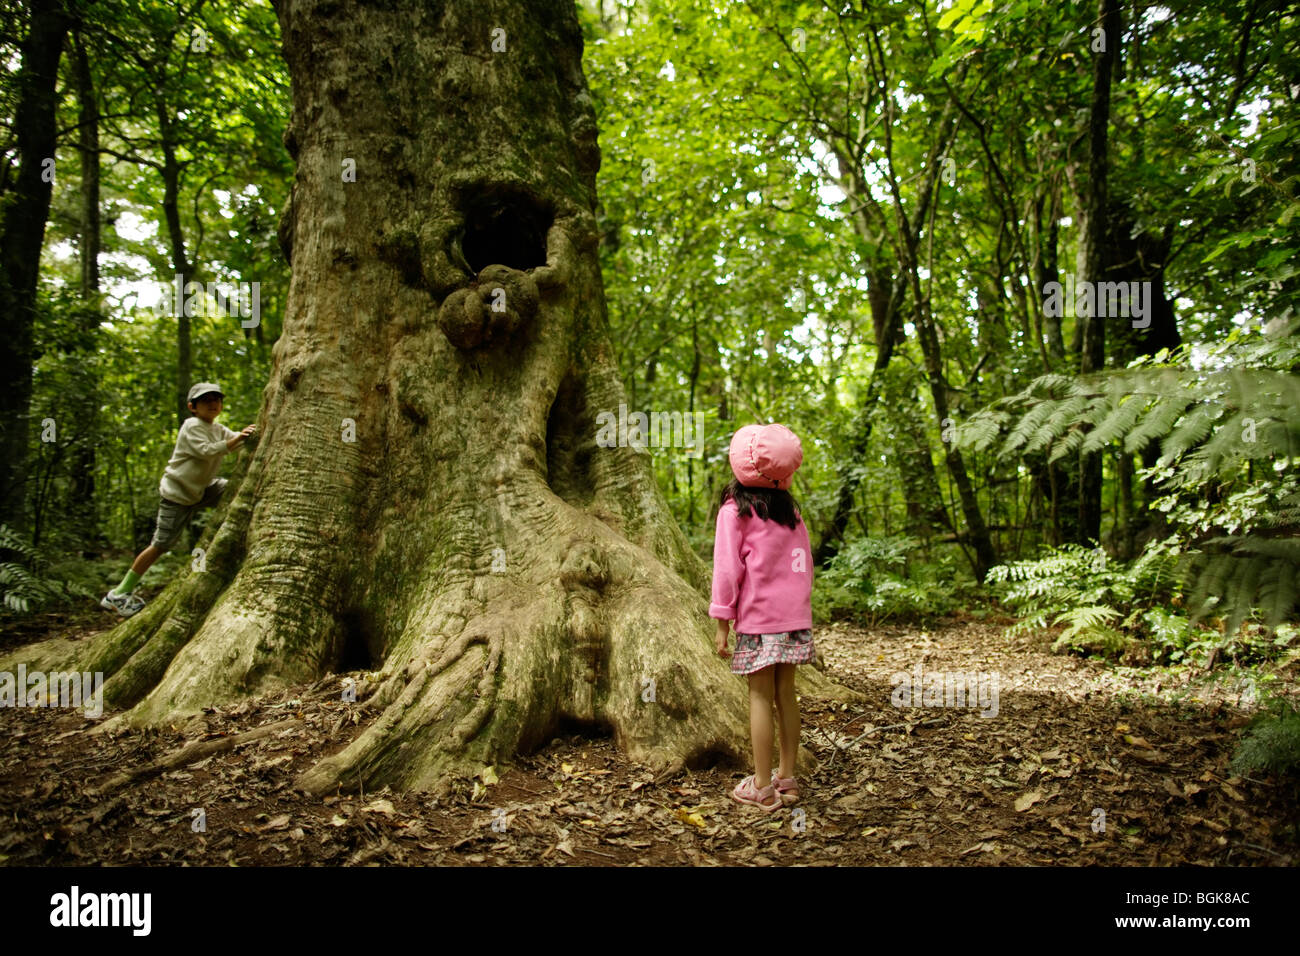 Children play beside 2000 year old Puriri tree in Pukekura park, New Plymouth, New Zealand Stock Photo